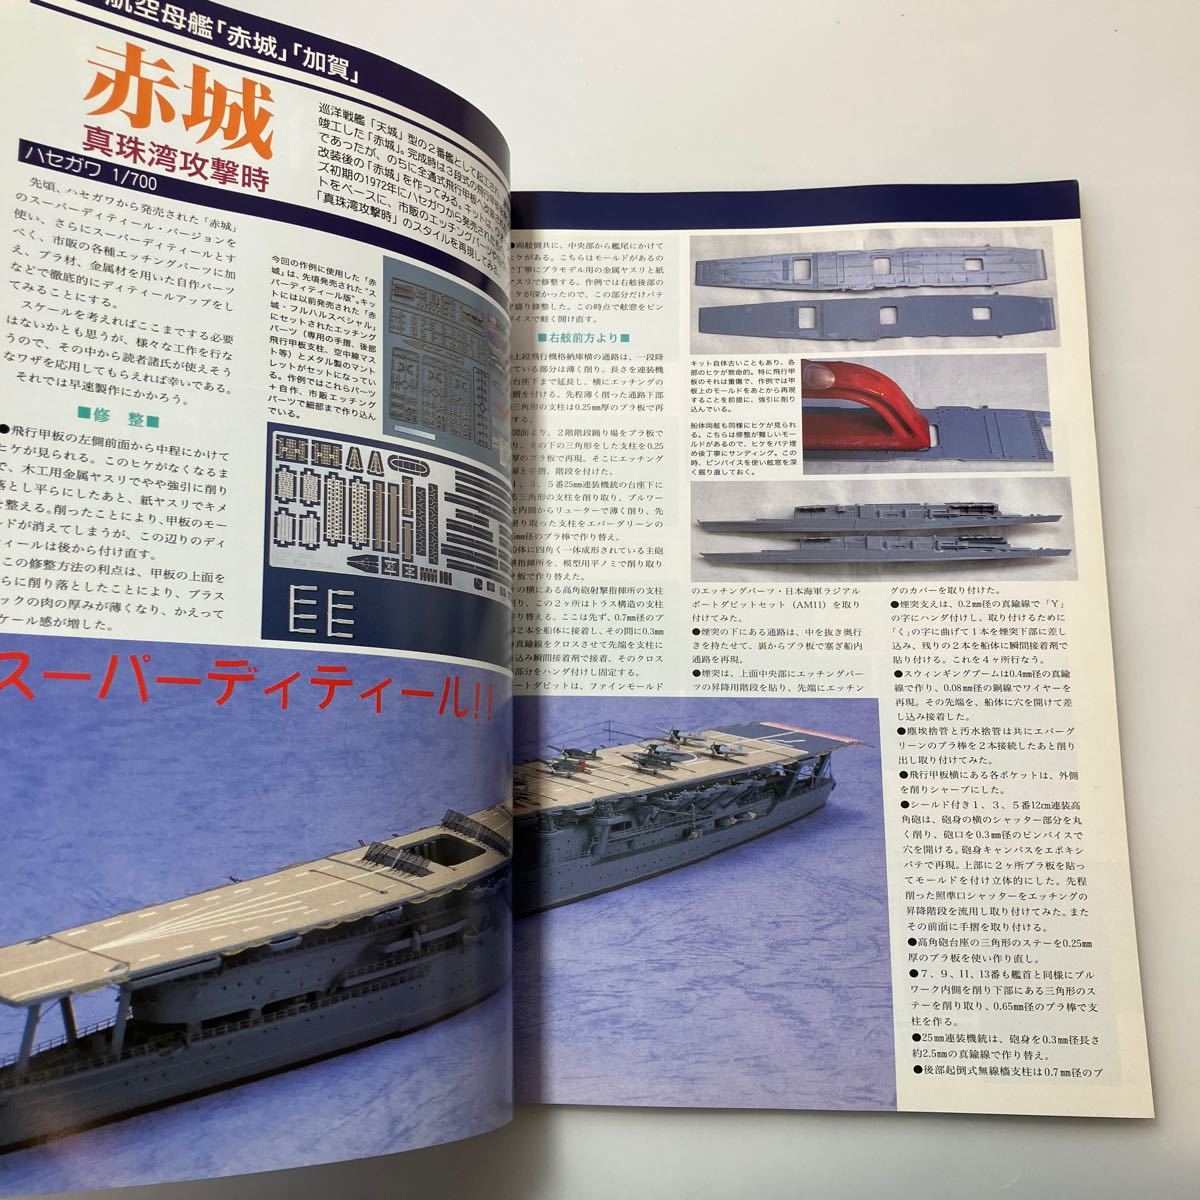 zaa530♪艦船模型スペシャル 2001年 03月号 NO.1 航空母艦　赤城・加賀 (季刊モデルアート) モデルアート社_画像3